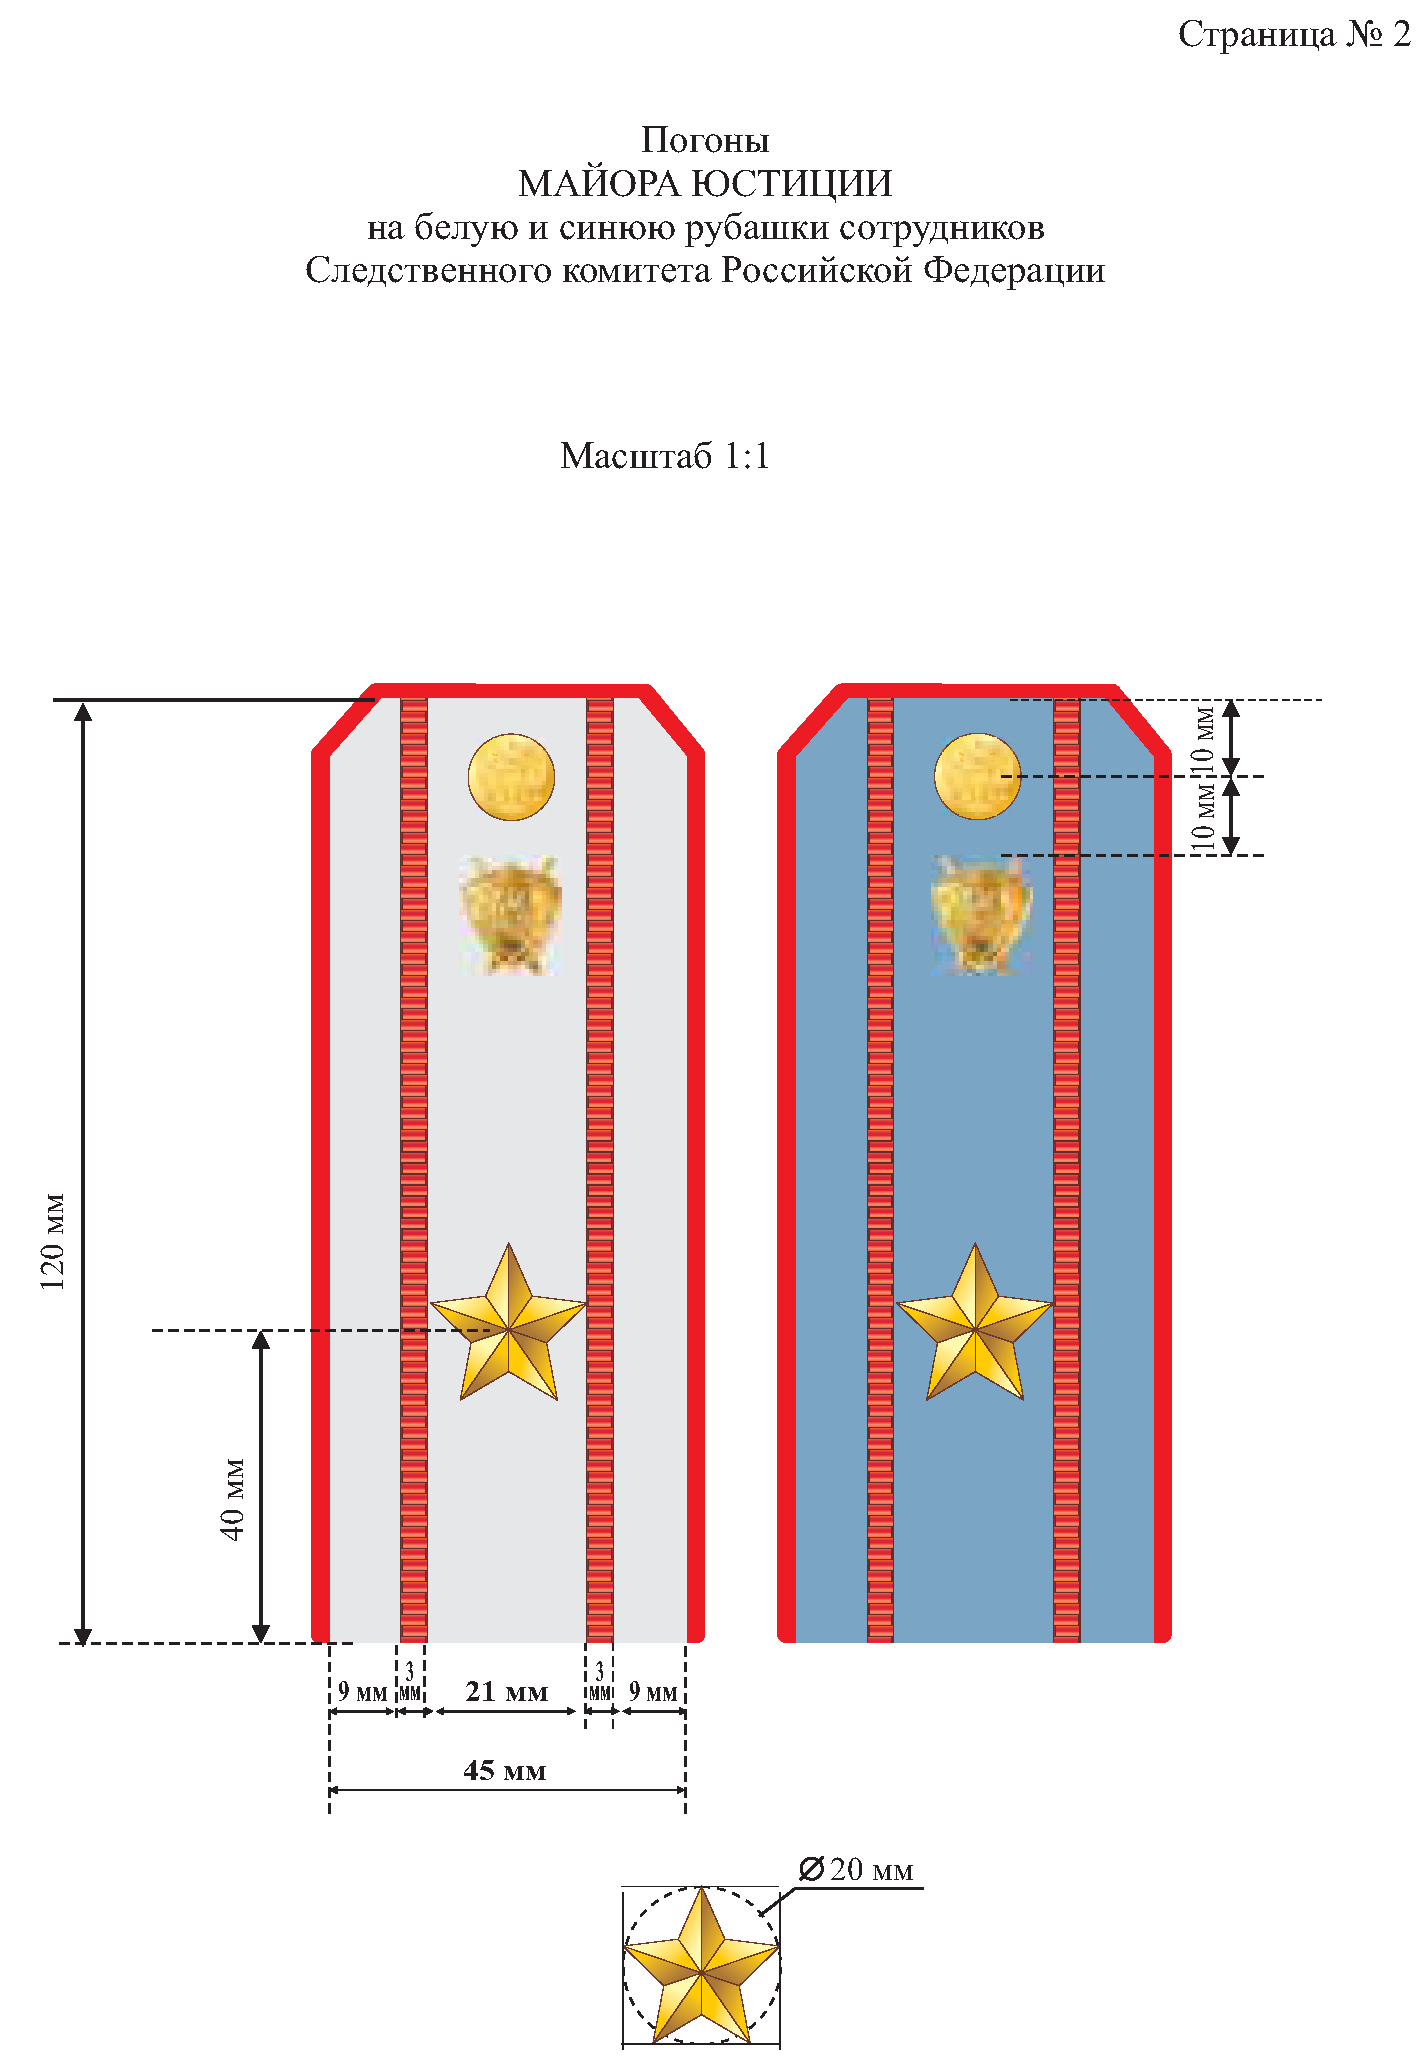 Расстояние между звездами на погонах прапорщика